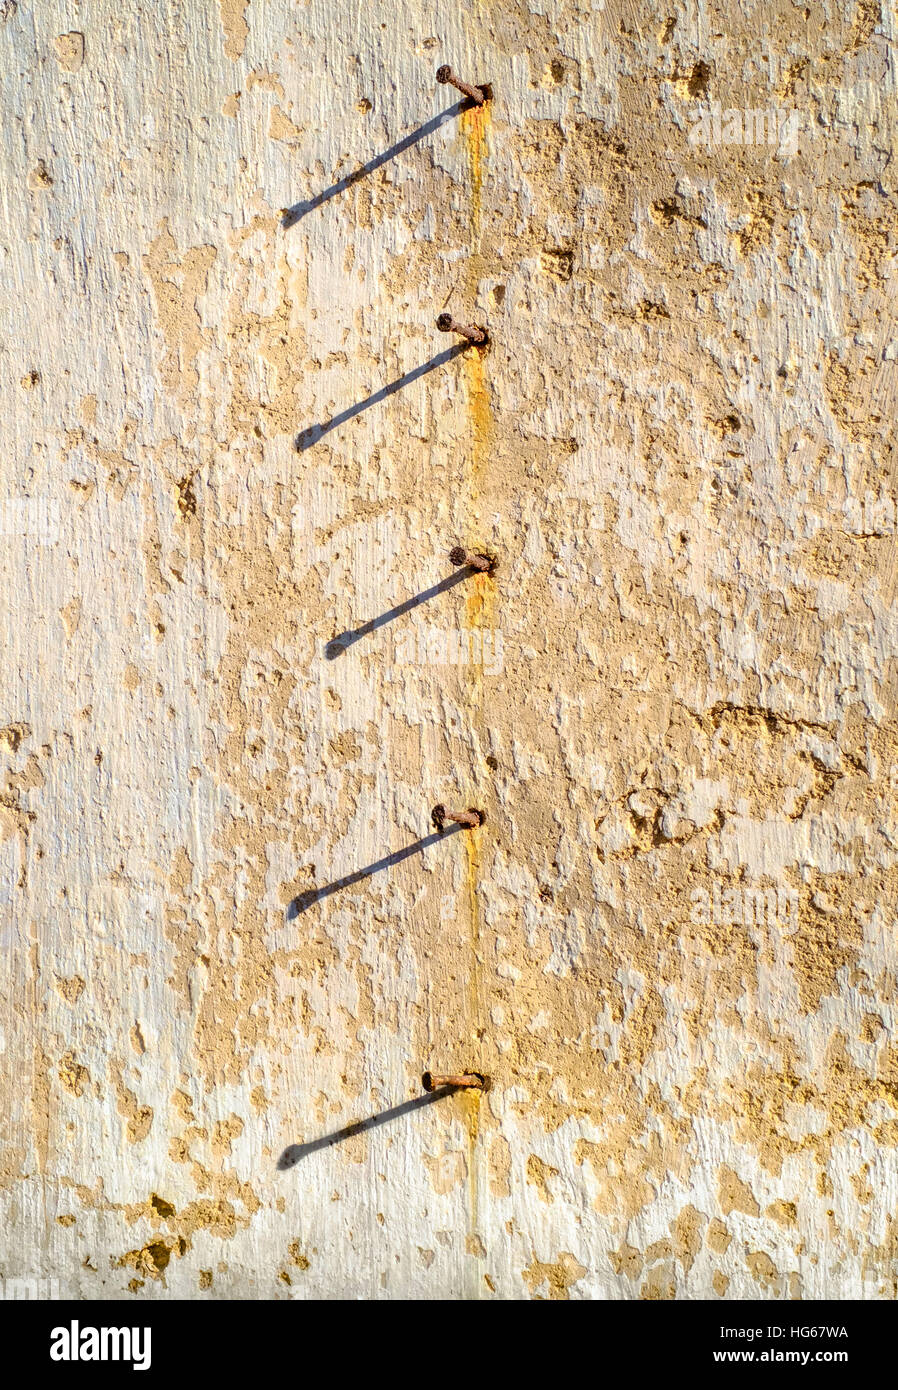 Fila de clavos oxidados clavados en la pared, bajo la luz de la tarde. Salento, Italia. Foto de stock